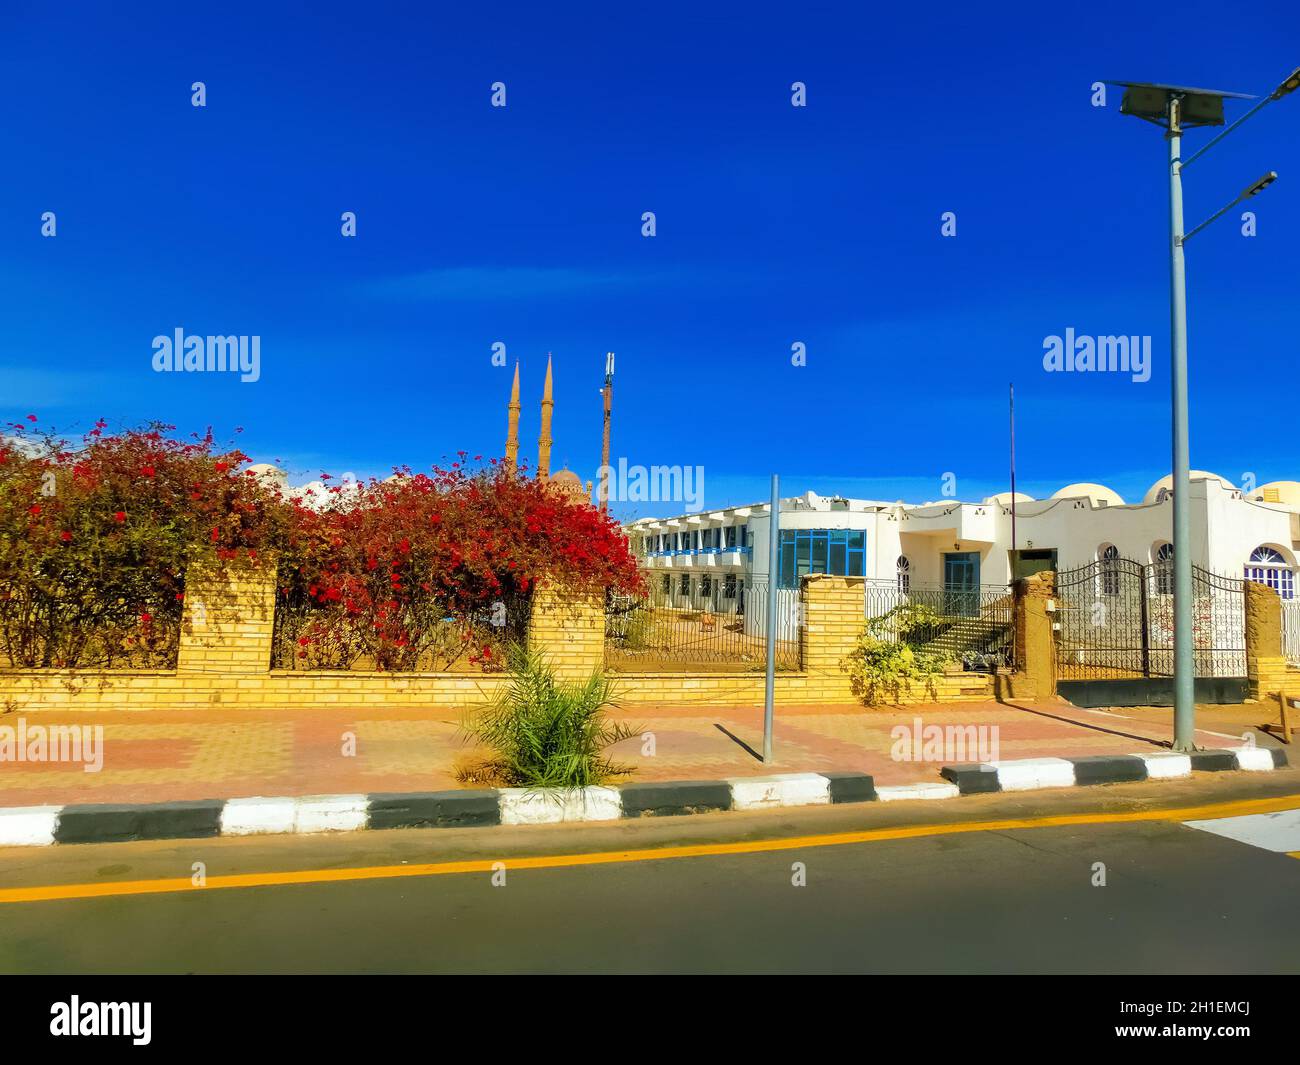 La rue à l'ancien marché à Sharm El Sheikh à l'Egypte Banque D'Images